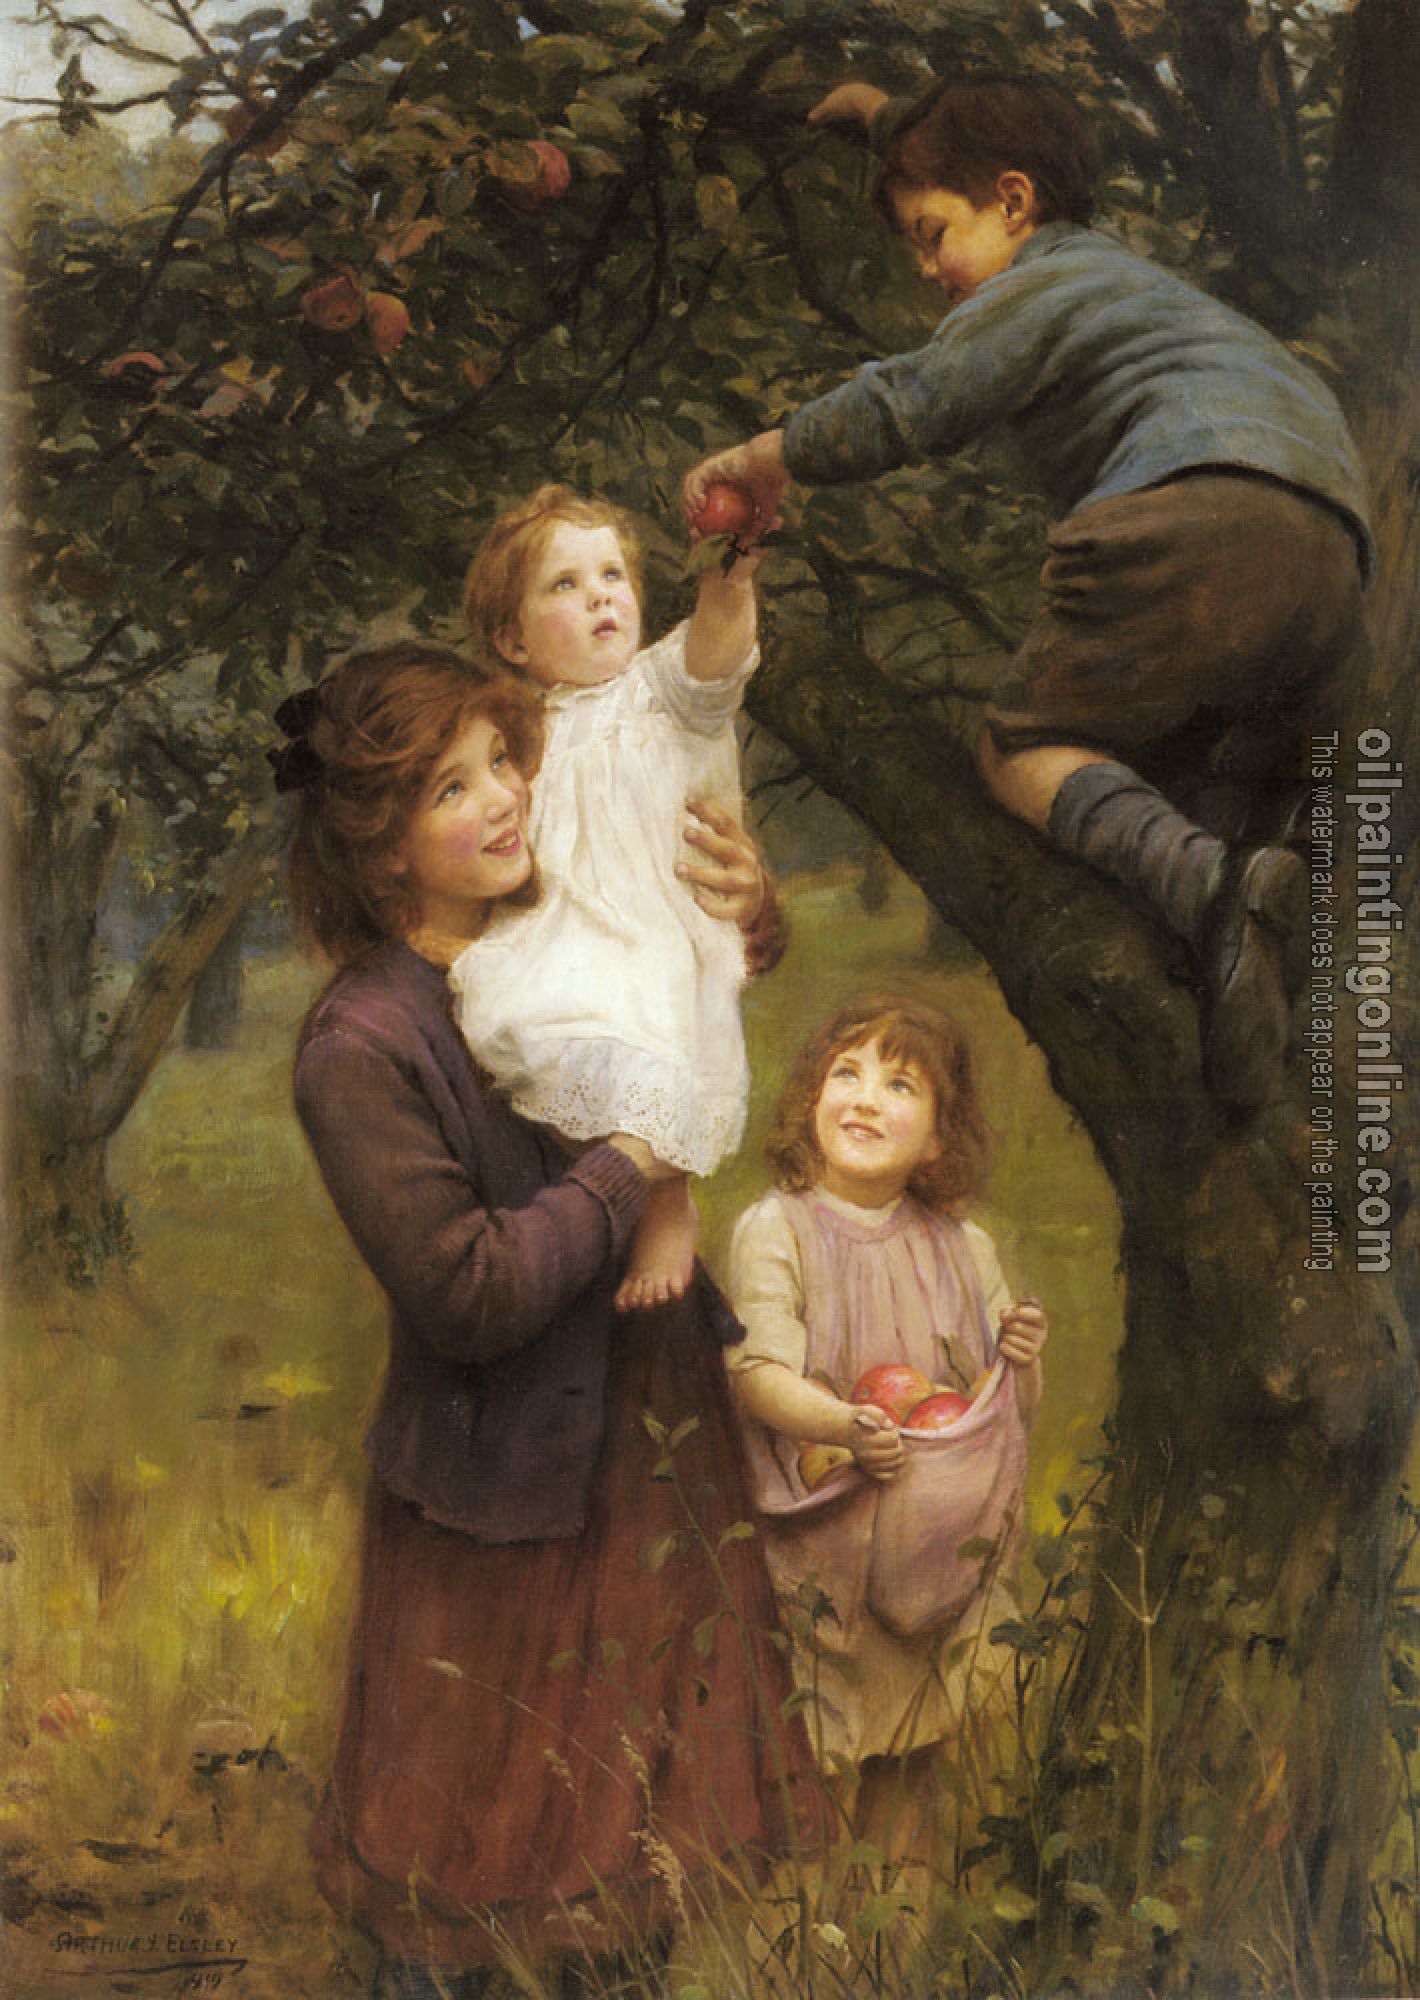 Elsley, Arthur John - Picking Apples